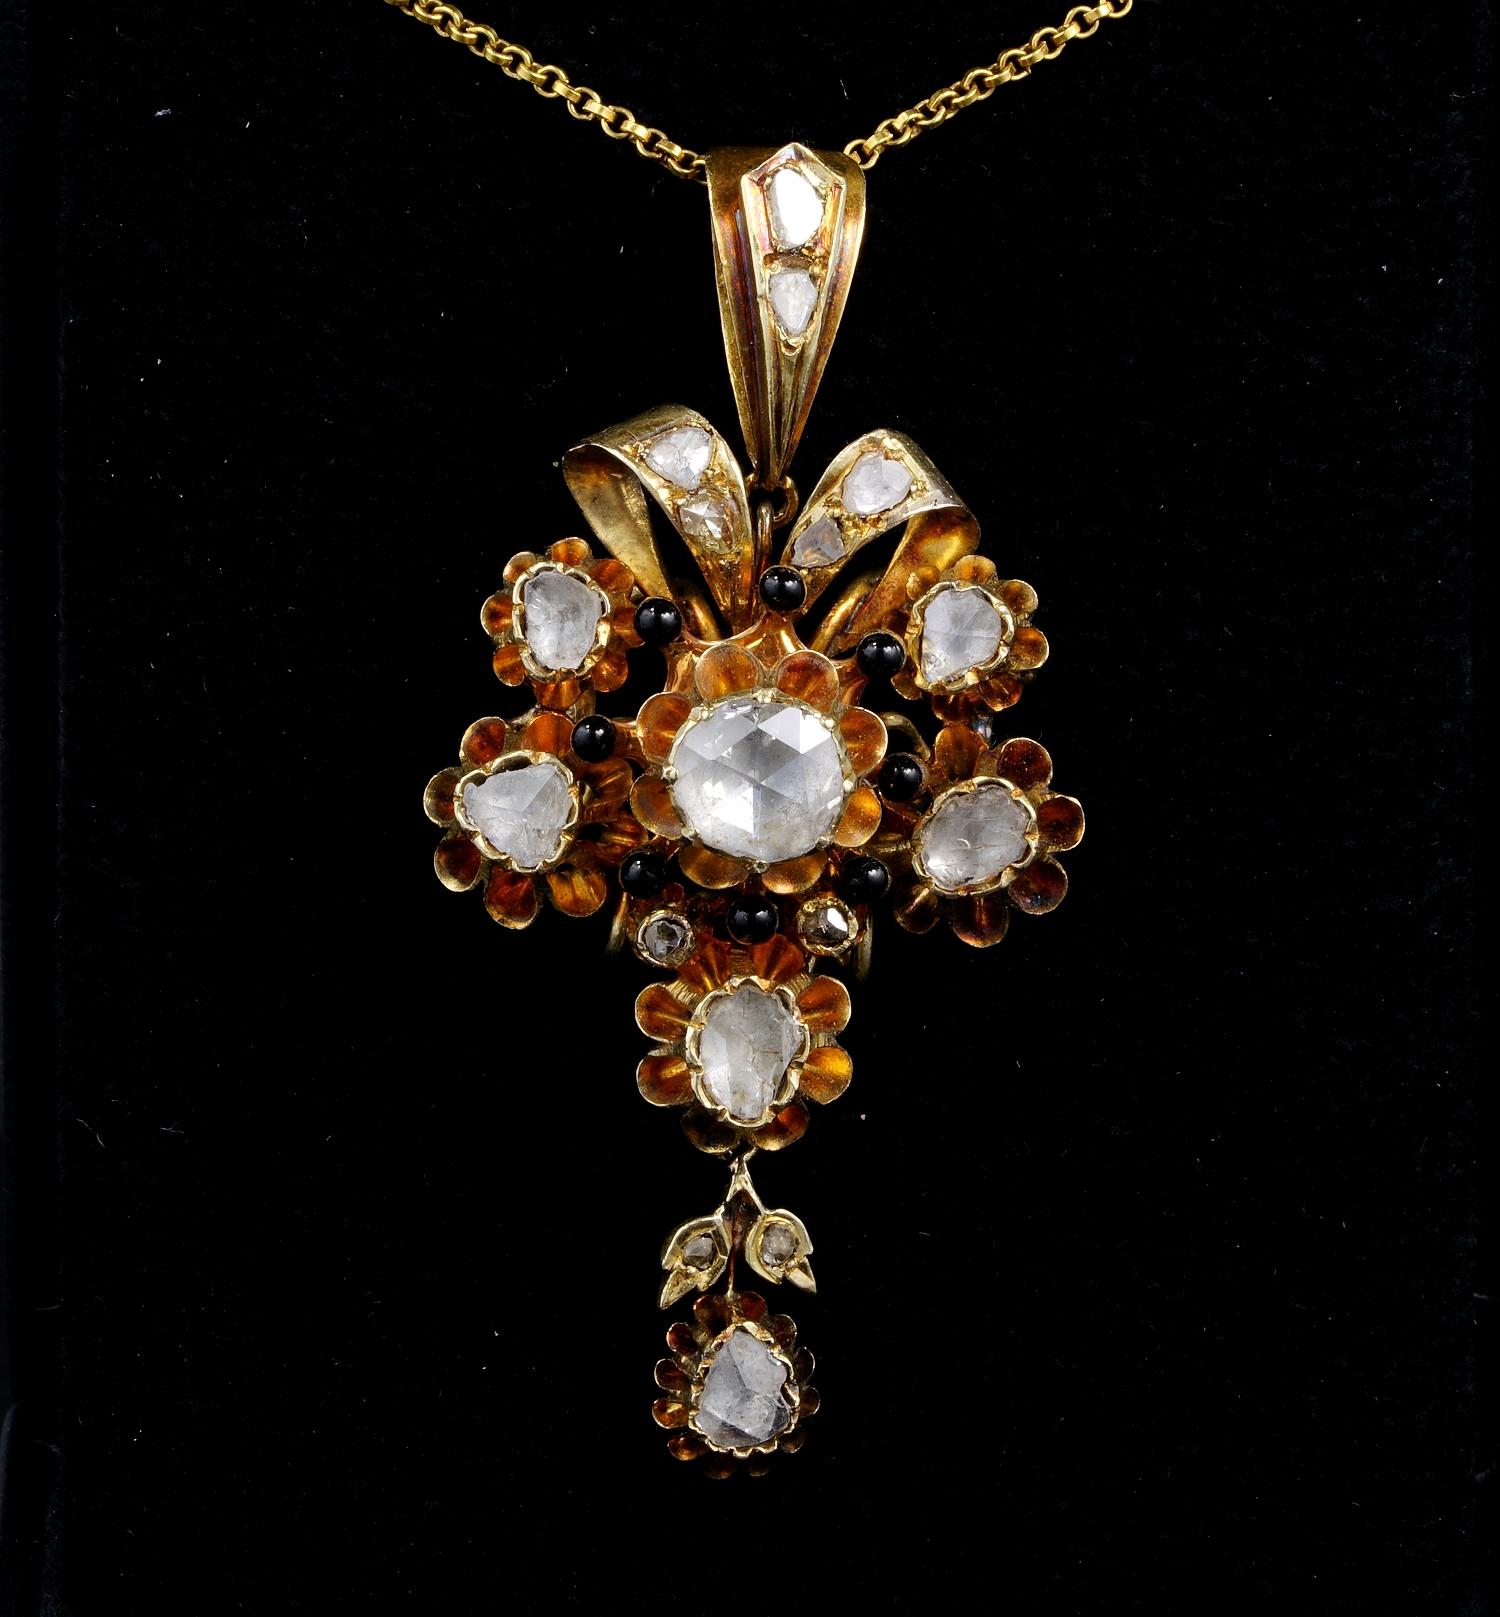 Etonnant pendentif en diamant en forme de grande fleur de l'époque géorgienne, pouvant être utilisé en le contournant par un ruban de velours noir ou de soie, ou comme pendentif par son attache dédiée, qui peut être complètement séparée de